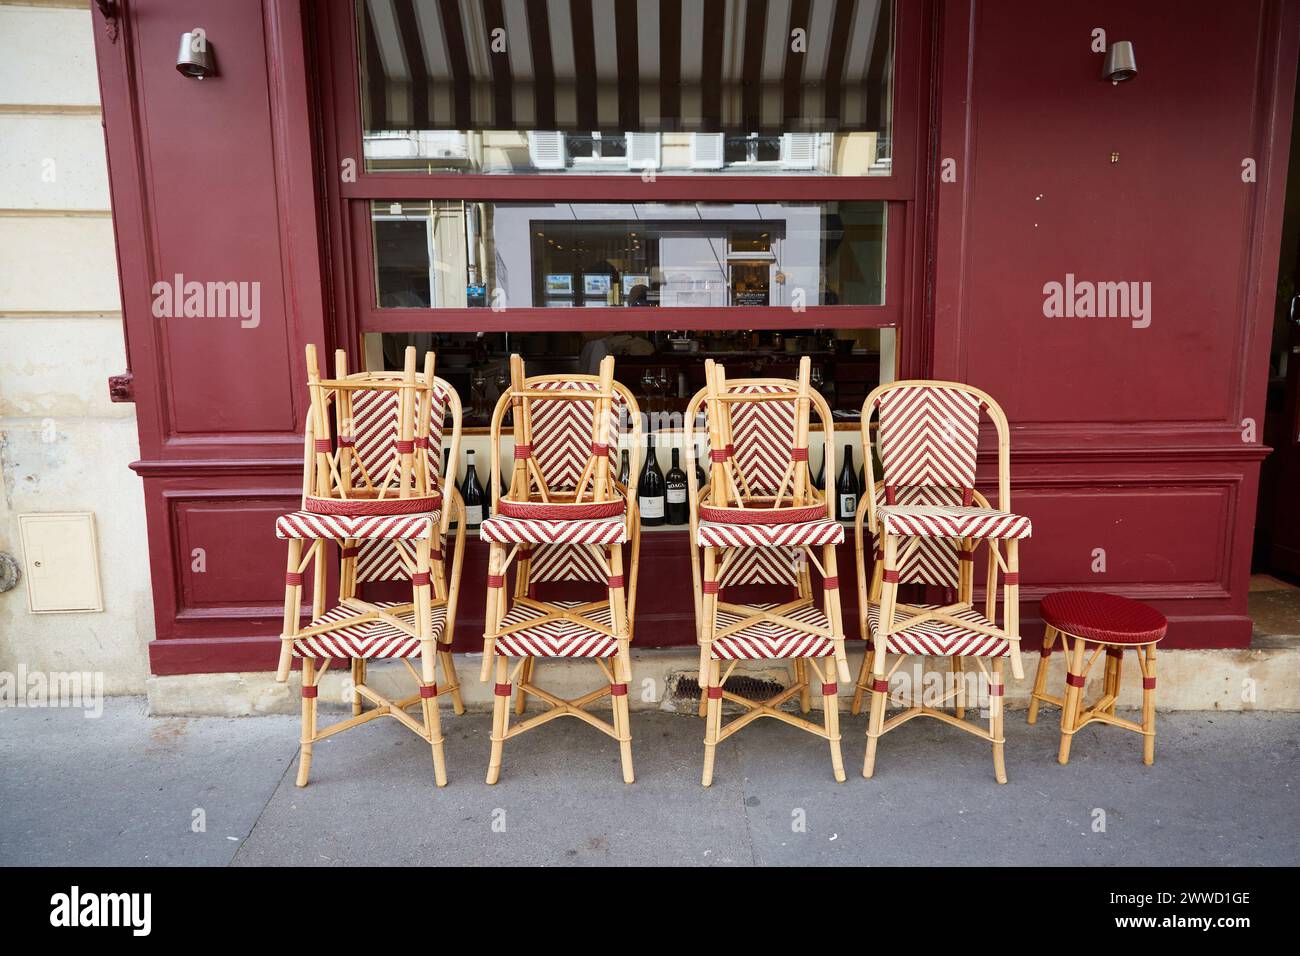 Chaises en rotin empilées devant un restaurant Banque D'Images